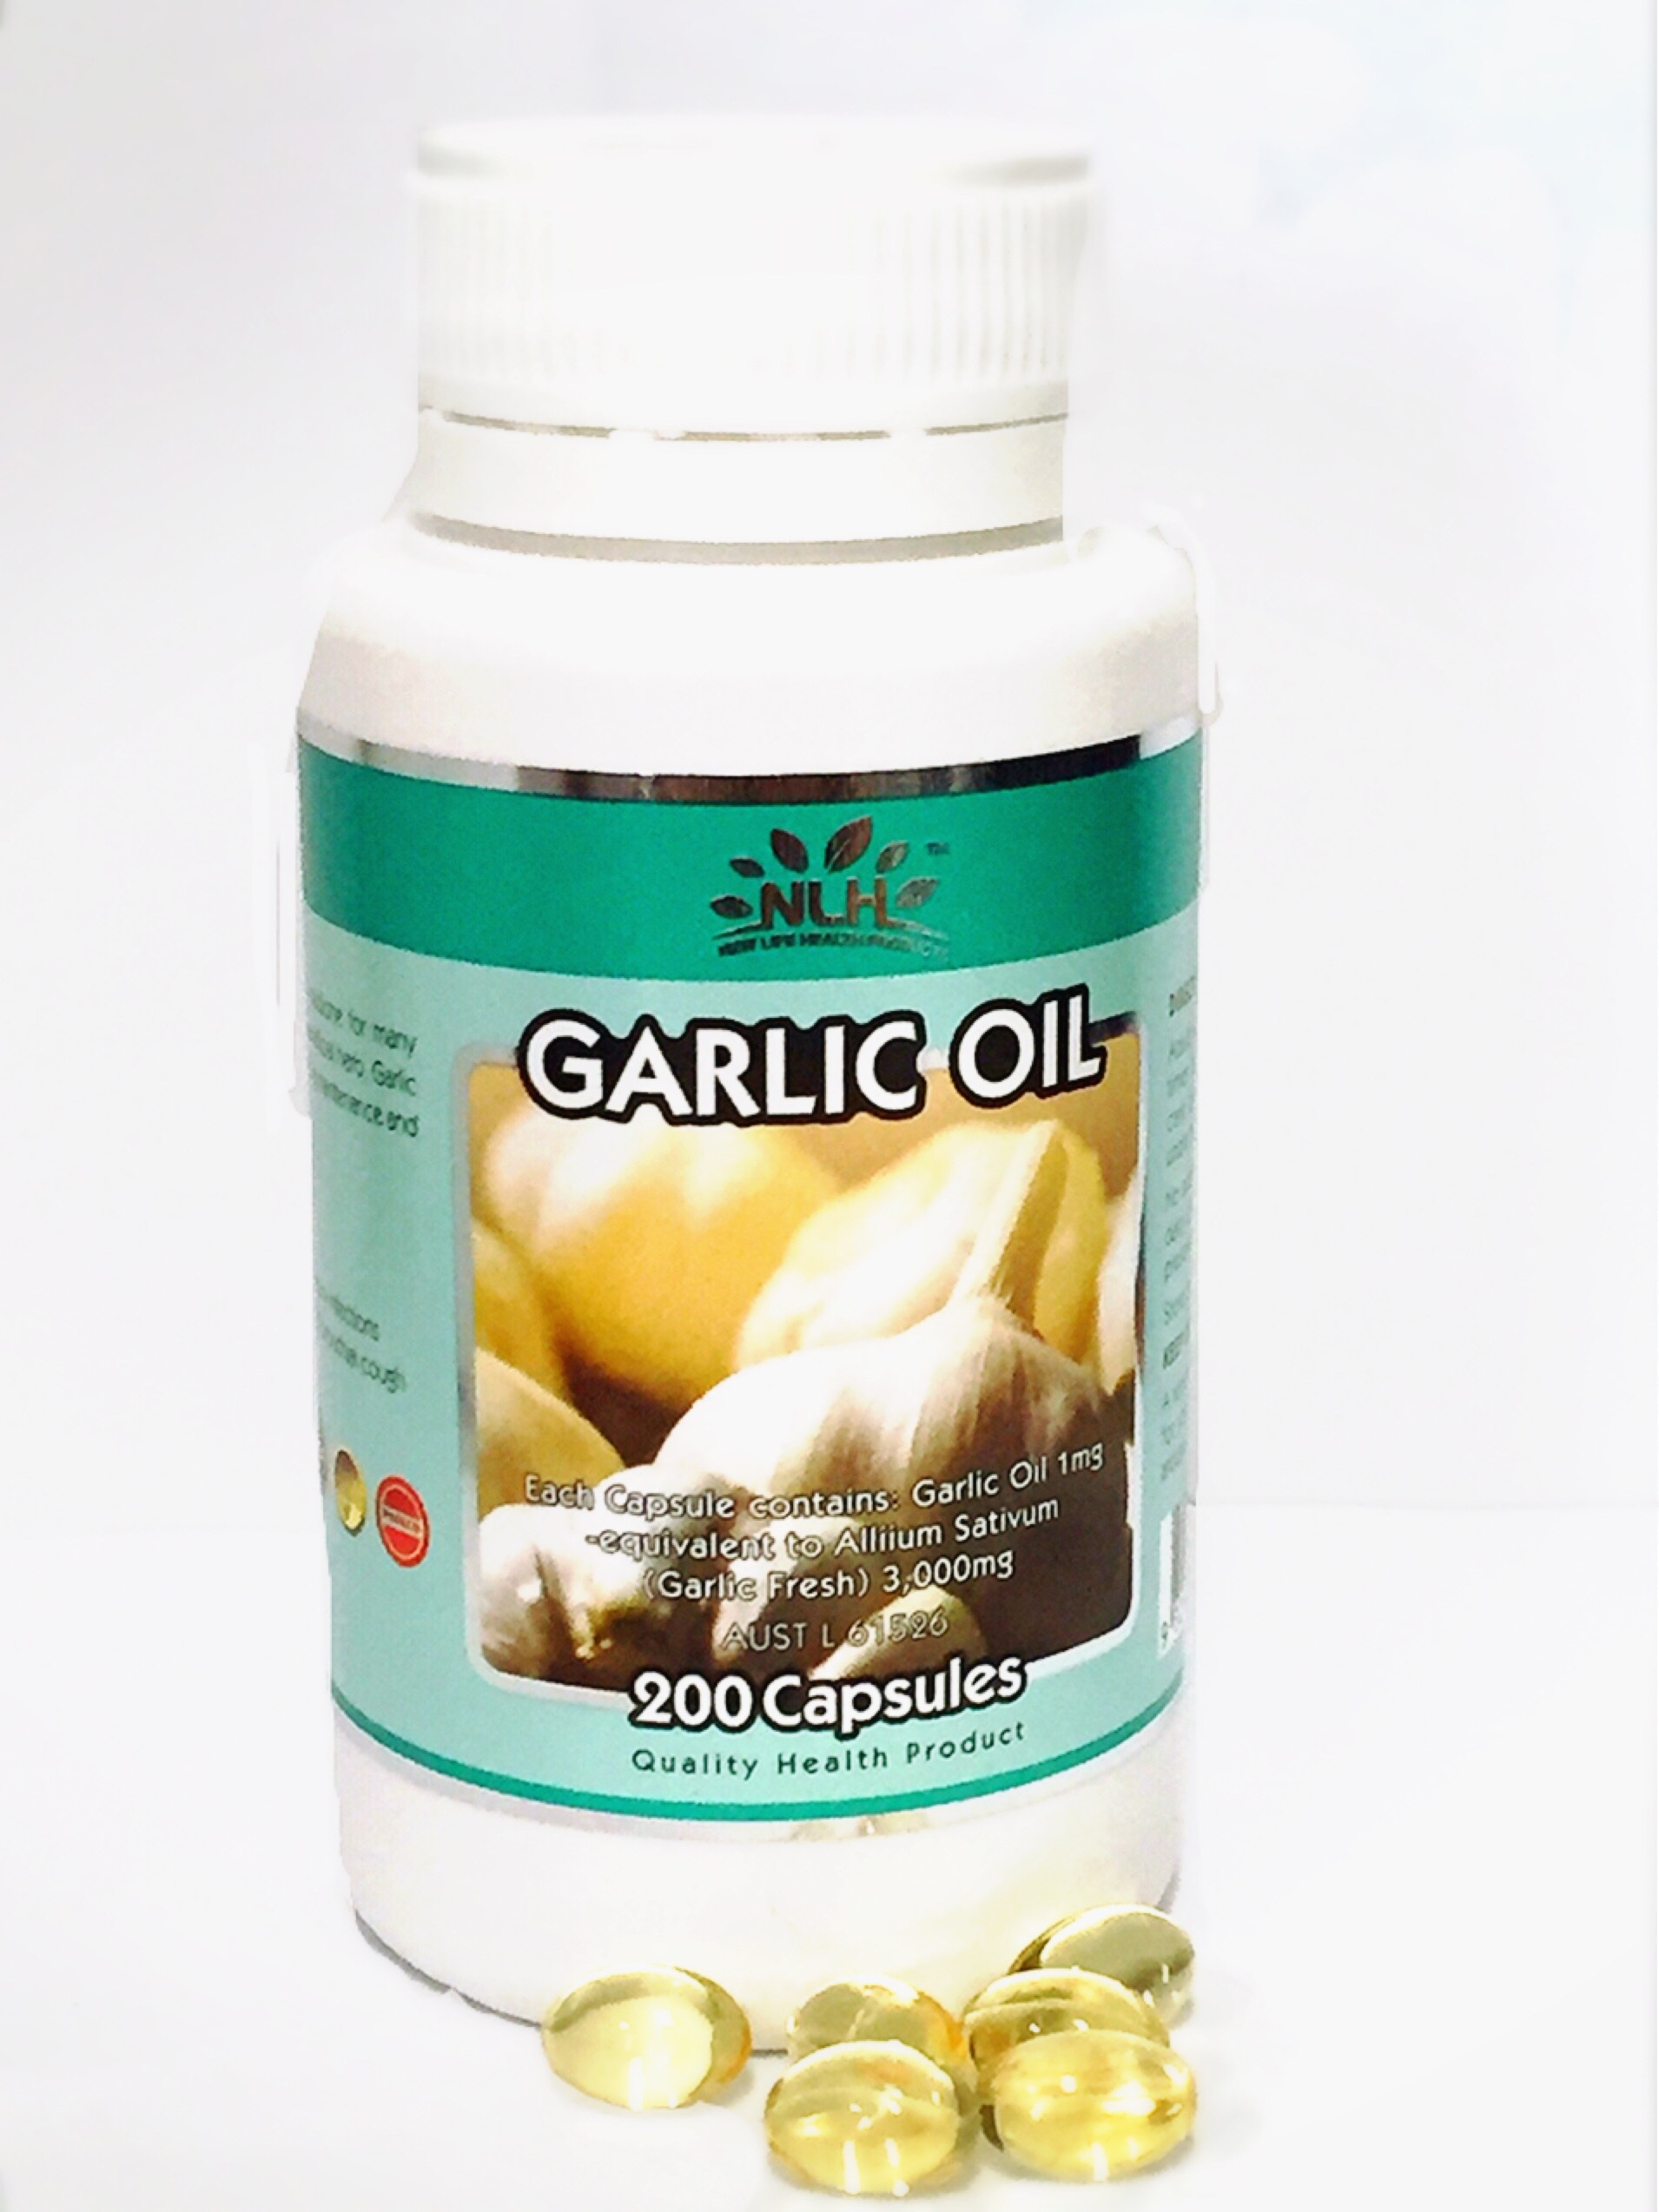 Garlic Oil 1mg (200 capsules)